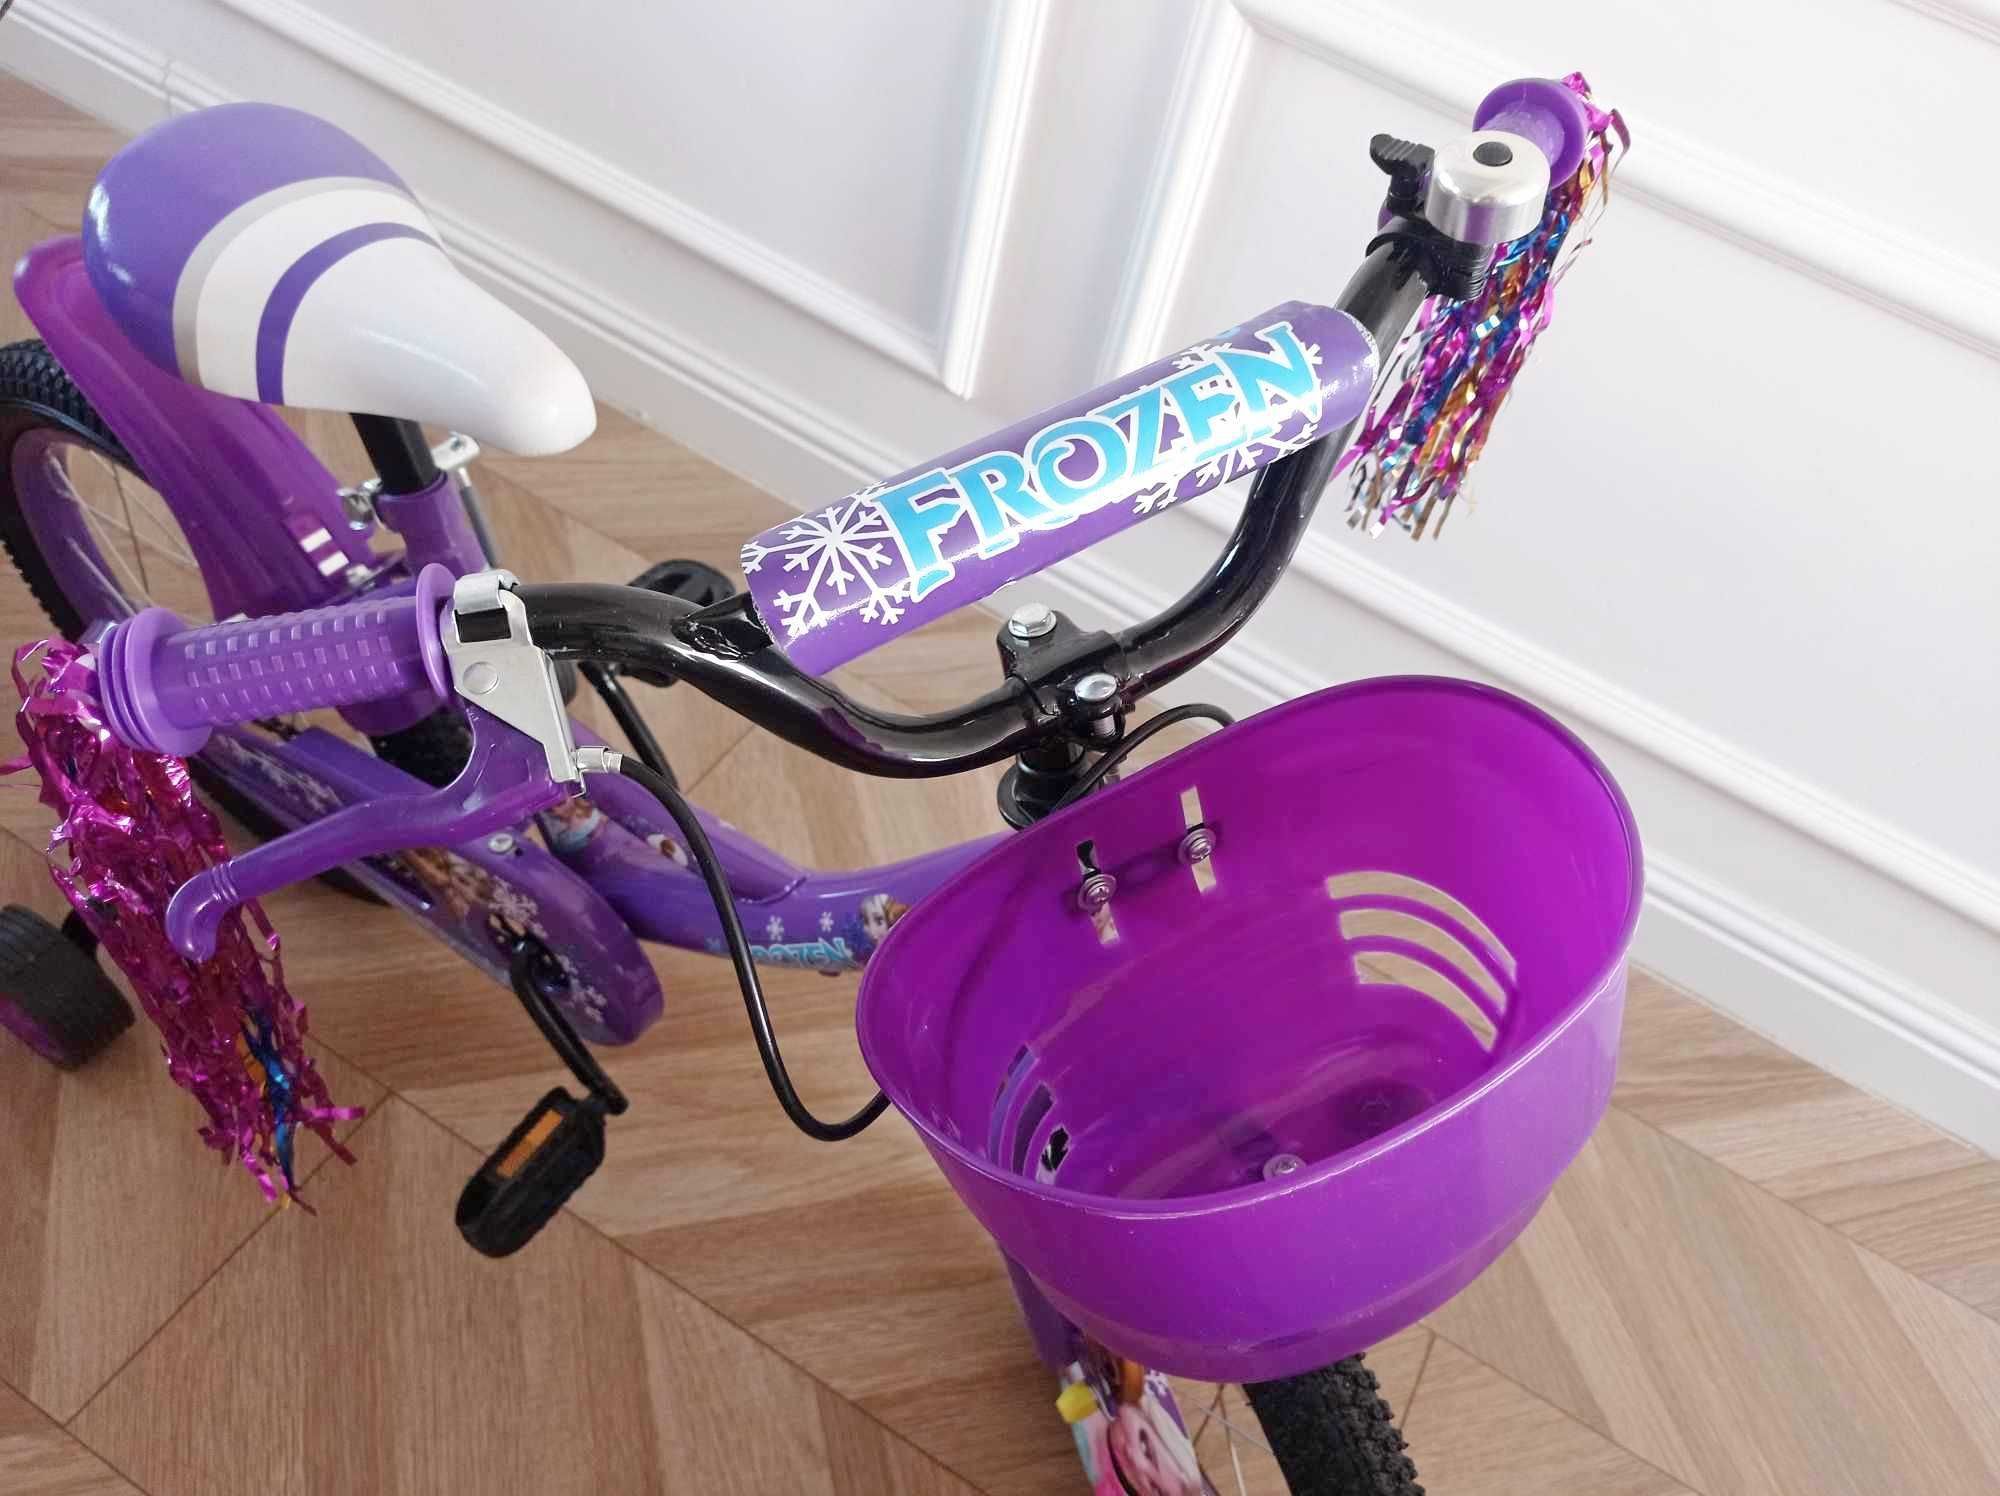 Nowy rower dziecięcy 16 cali rowerek dla dziewczynki 3-6 lat